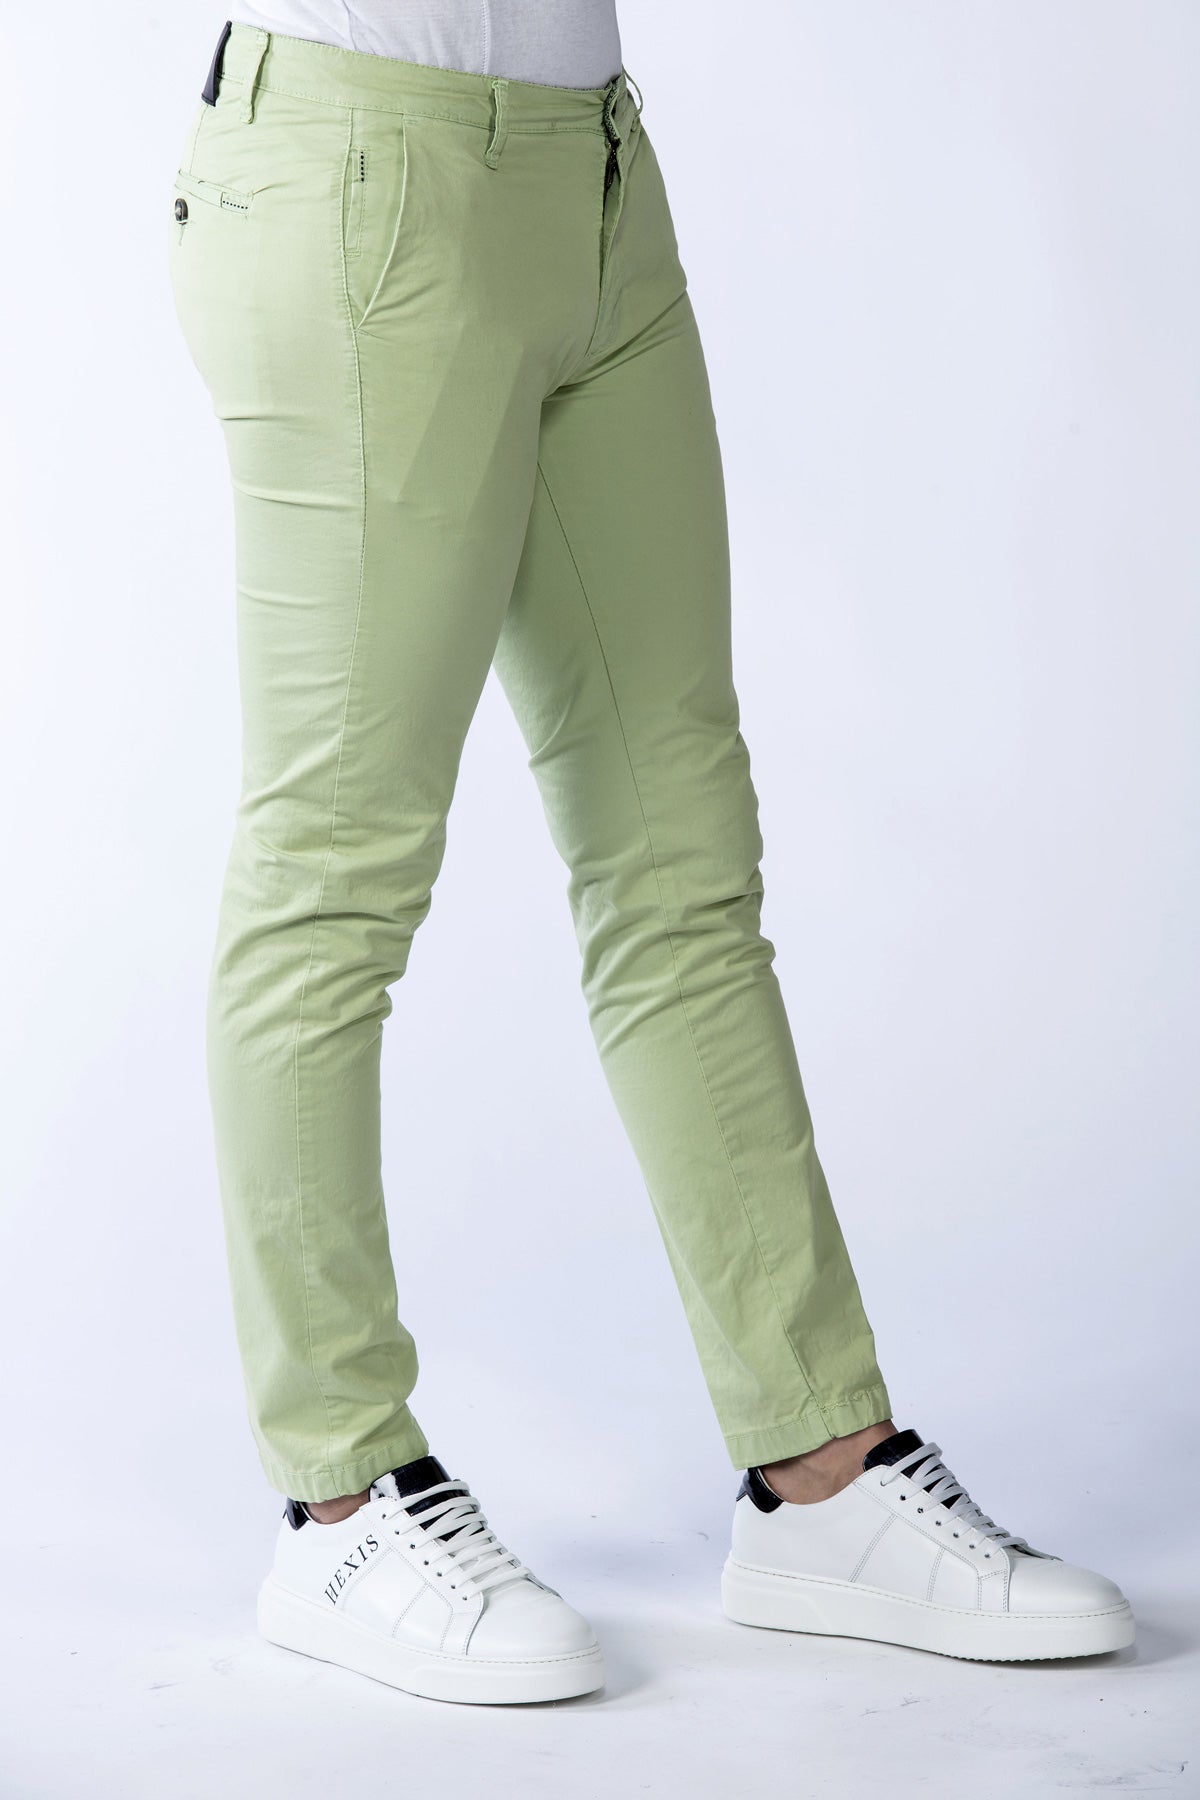 Bakerloo men's stretch trousers in apple green